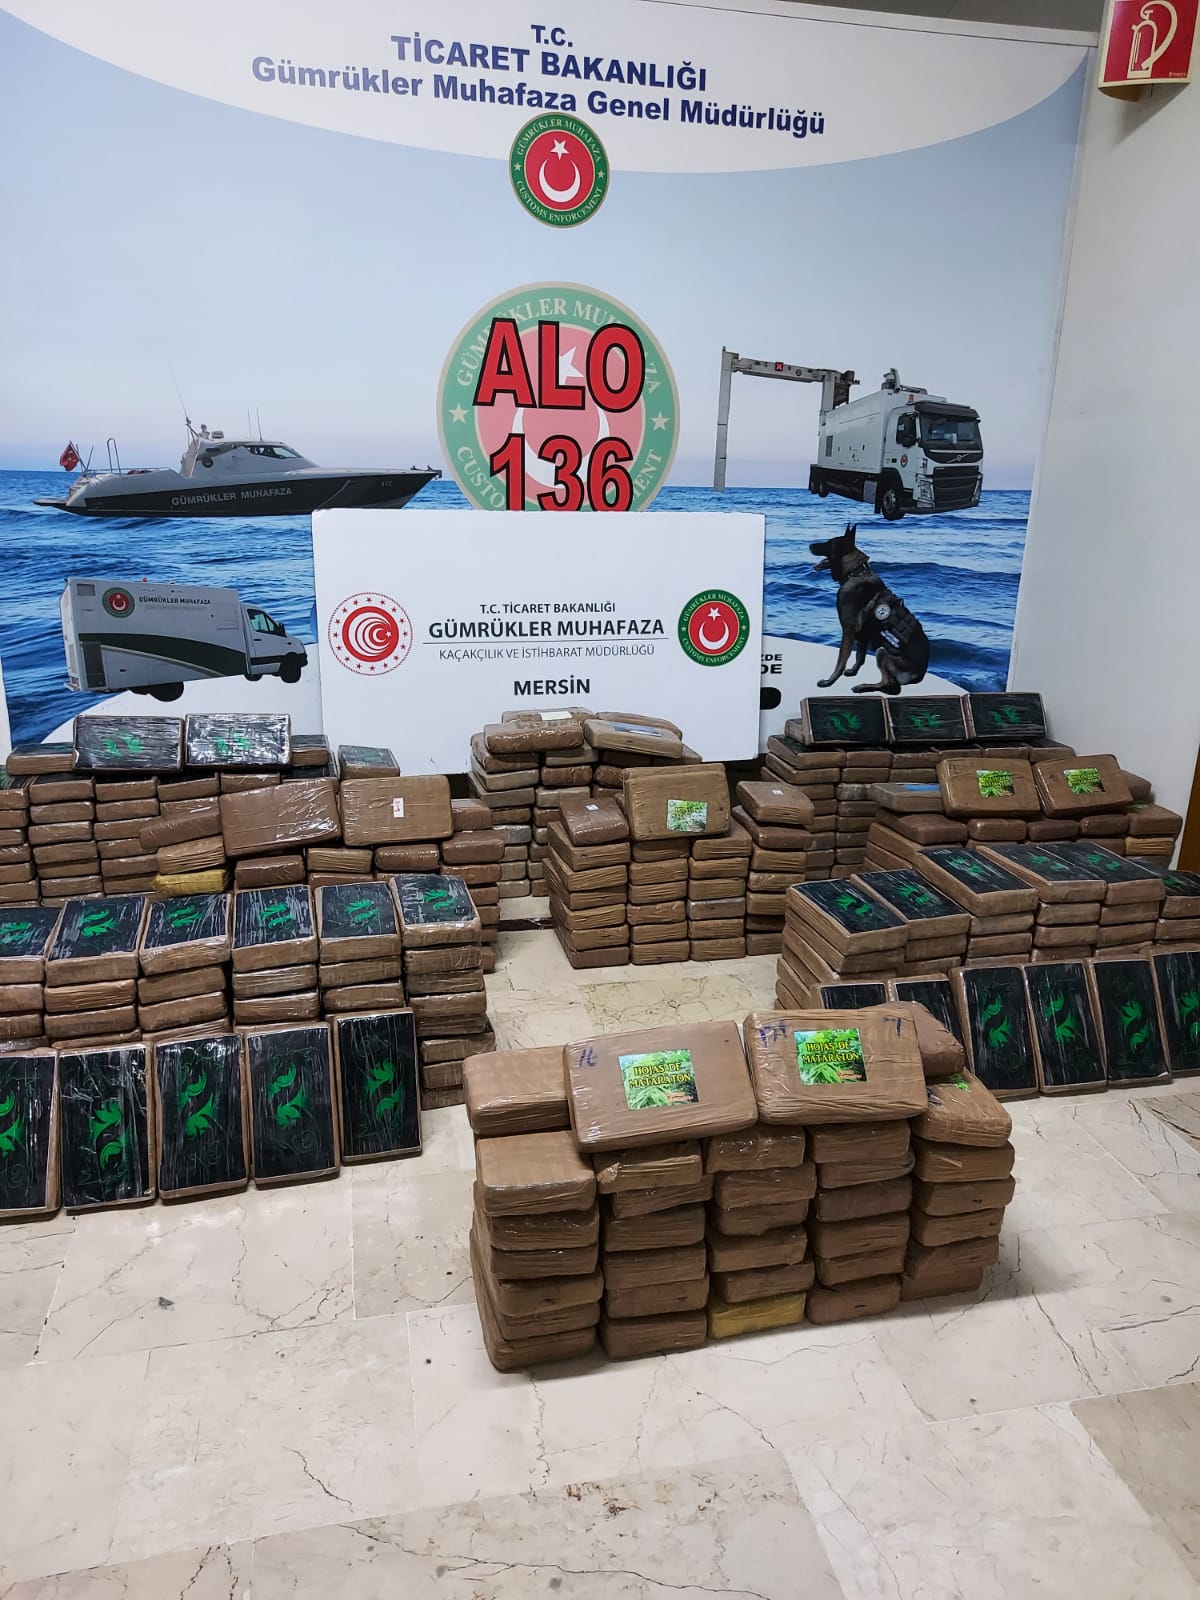 Yine Mersin Limanı: Ekvador'dan getirilen muzların arasında 463 kilo kokain yakalandı